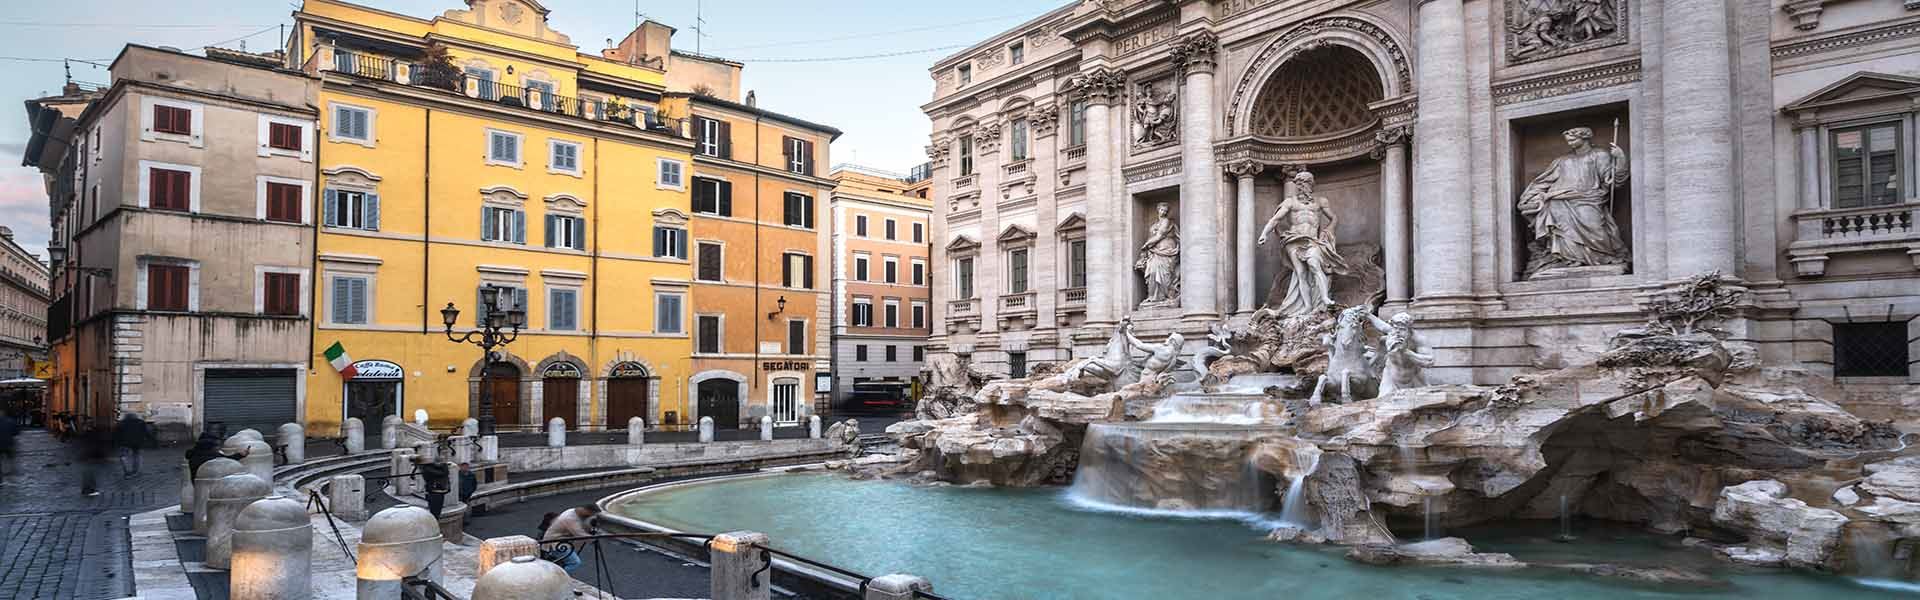 Imagen de una perspectiva lateral de la Fontana di Trevi. A la derecha de la imagen está la fuente de agua azul cristalina, con el Palacio Poli, en piedra, justo detrás de la fuente. A la izquierda de la imagen hay varios edificios en tonos anaranjados.